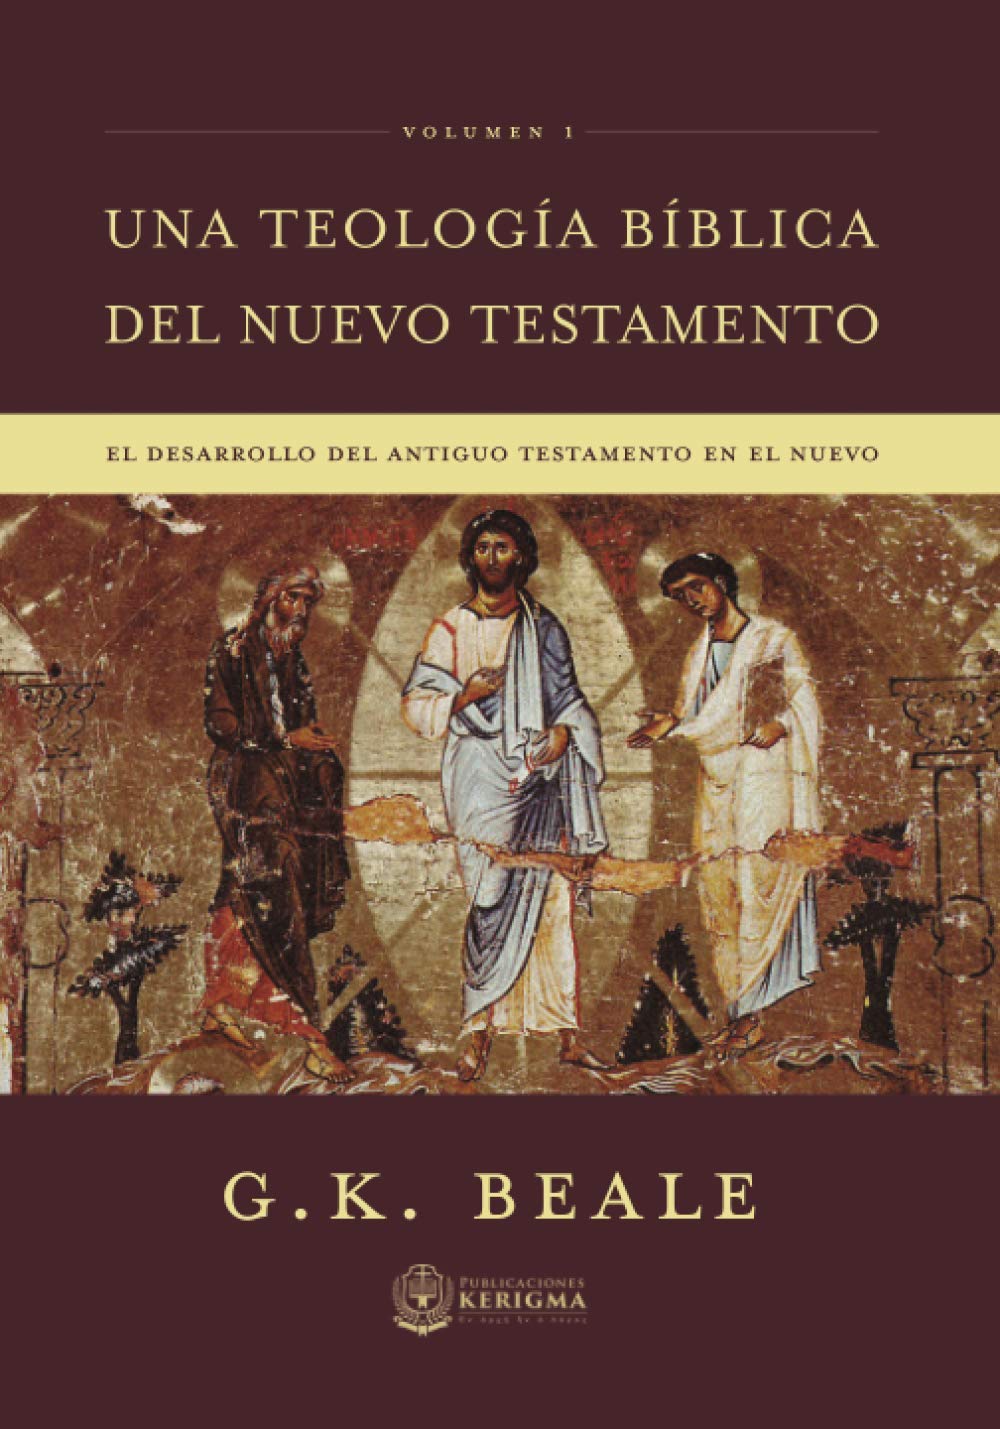 Una teología bíblica del Nuevo Testamento - Vol. 1